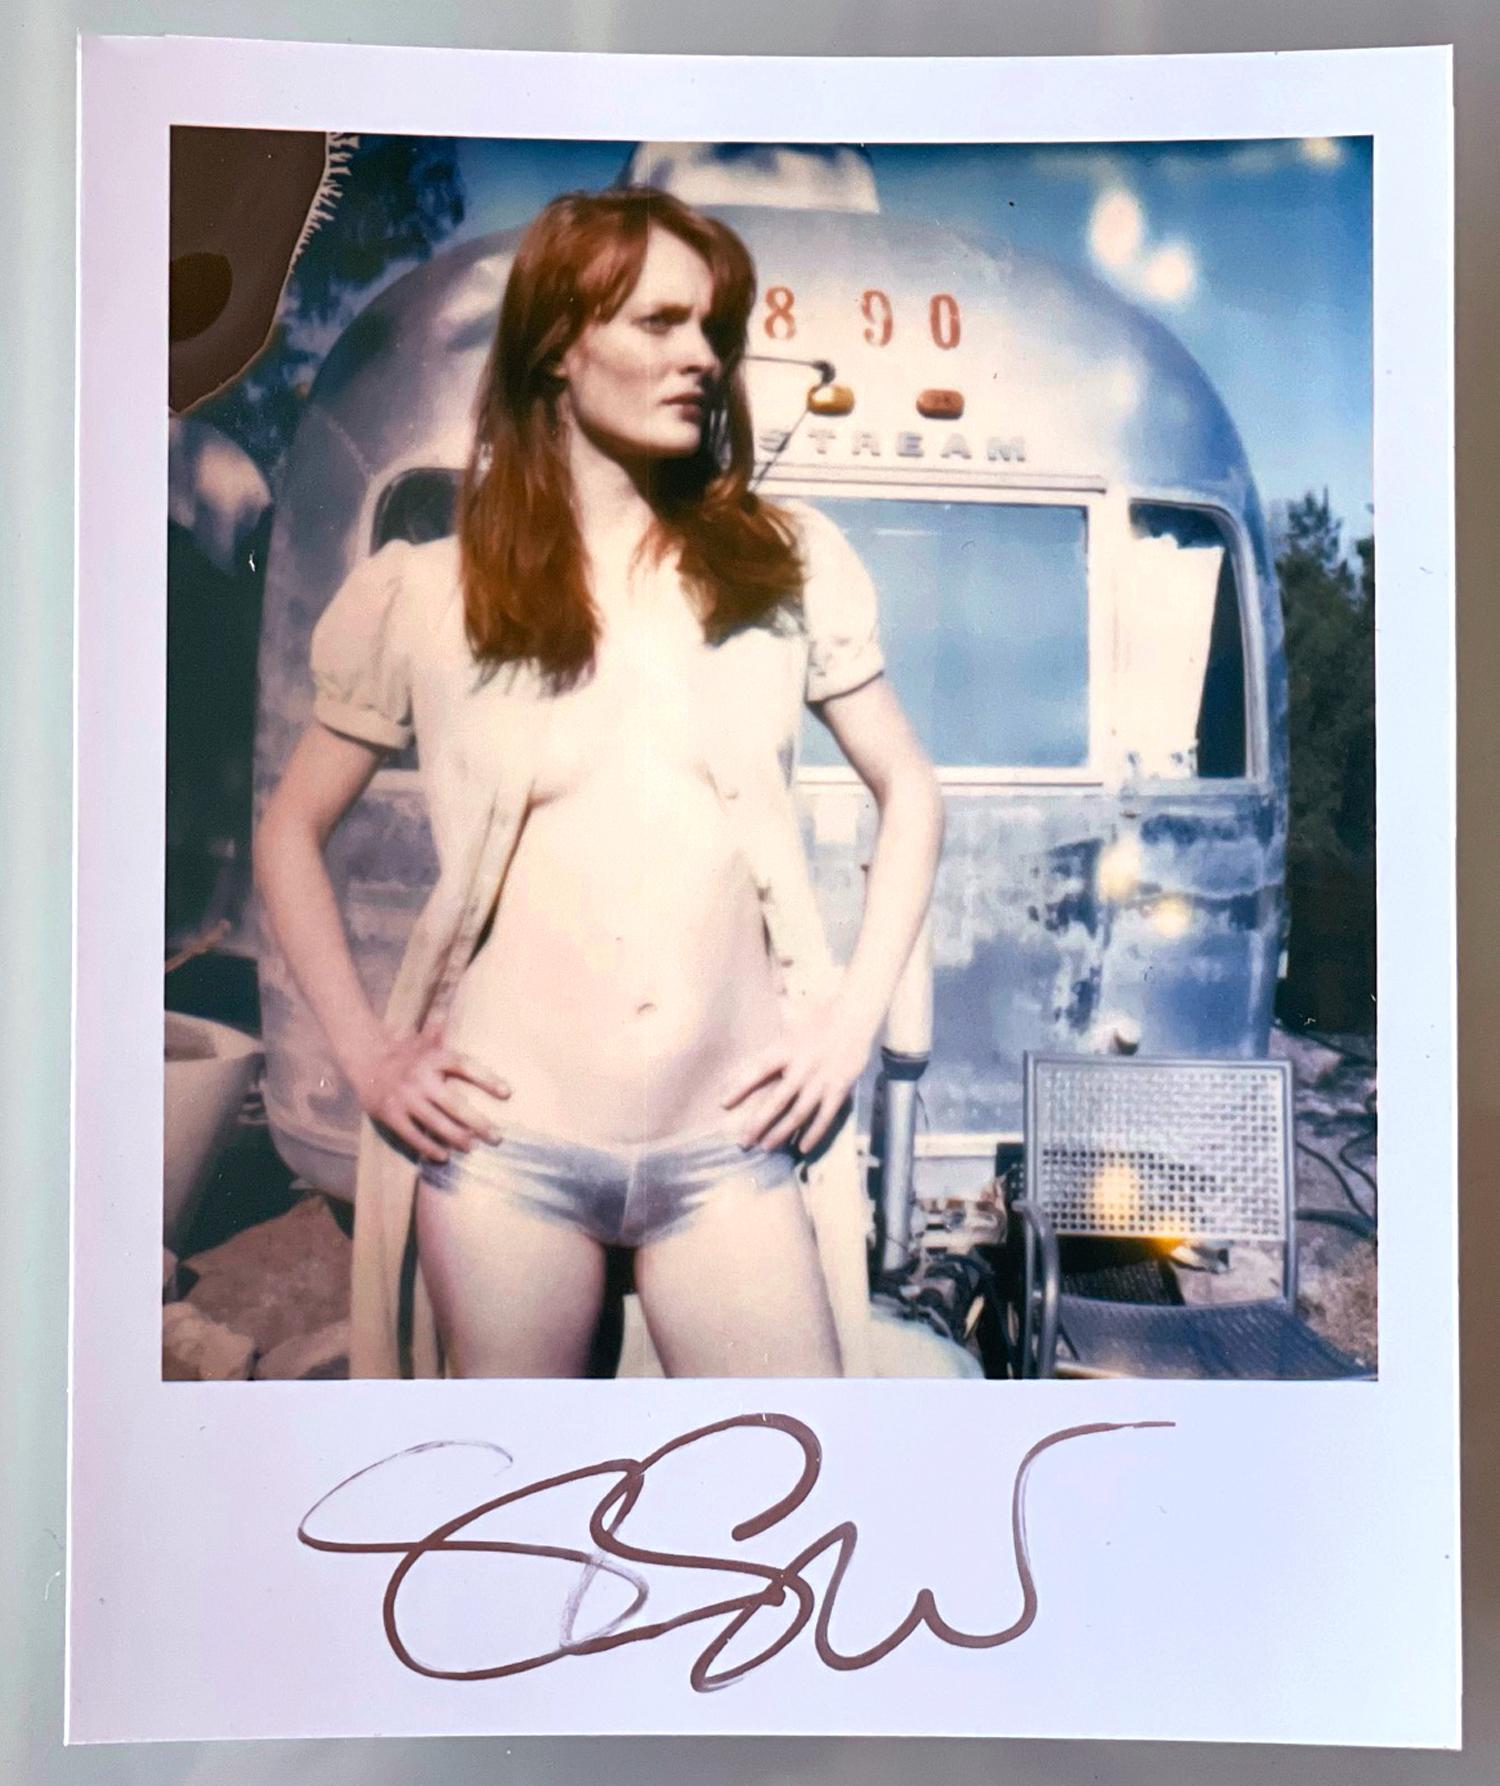 Stefanie Schneiders Mini
Daisy vor dem Trailer (Bis dass der Tod uns scheidet)

vorne signiert, nicht montiert. 
Digitale Farbfotografien auf der Grundlage eines Polaroids. 

Offene Editionen in Polaroidgröße 1999-2013
10.7 x 8,8cm (Bild